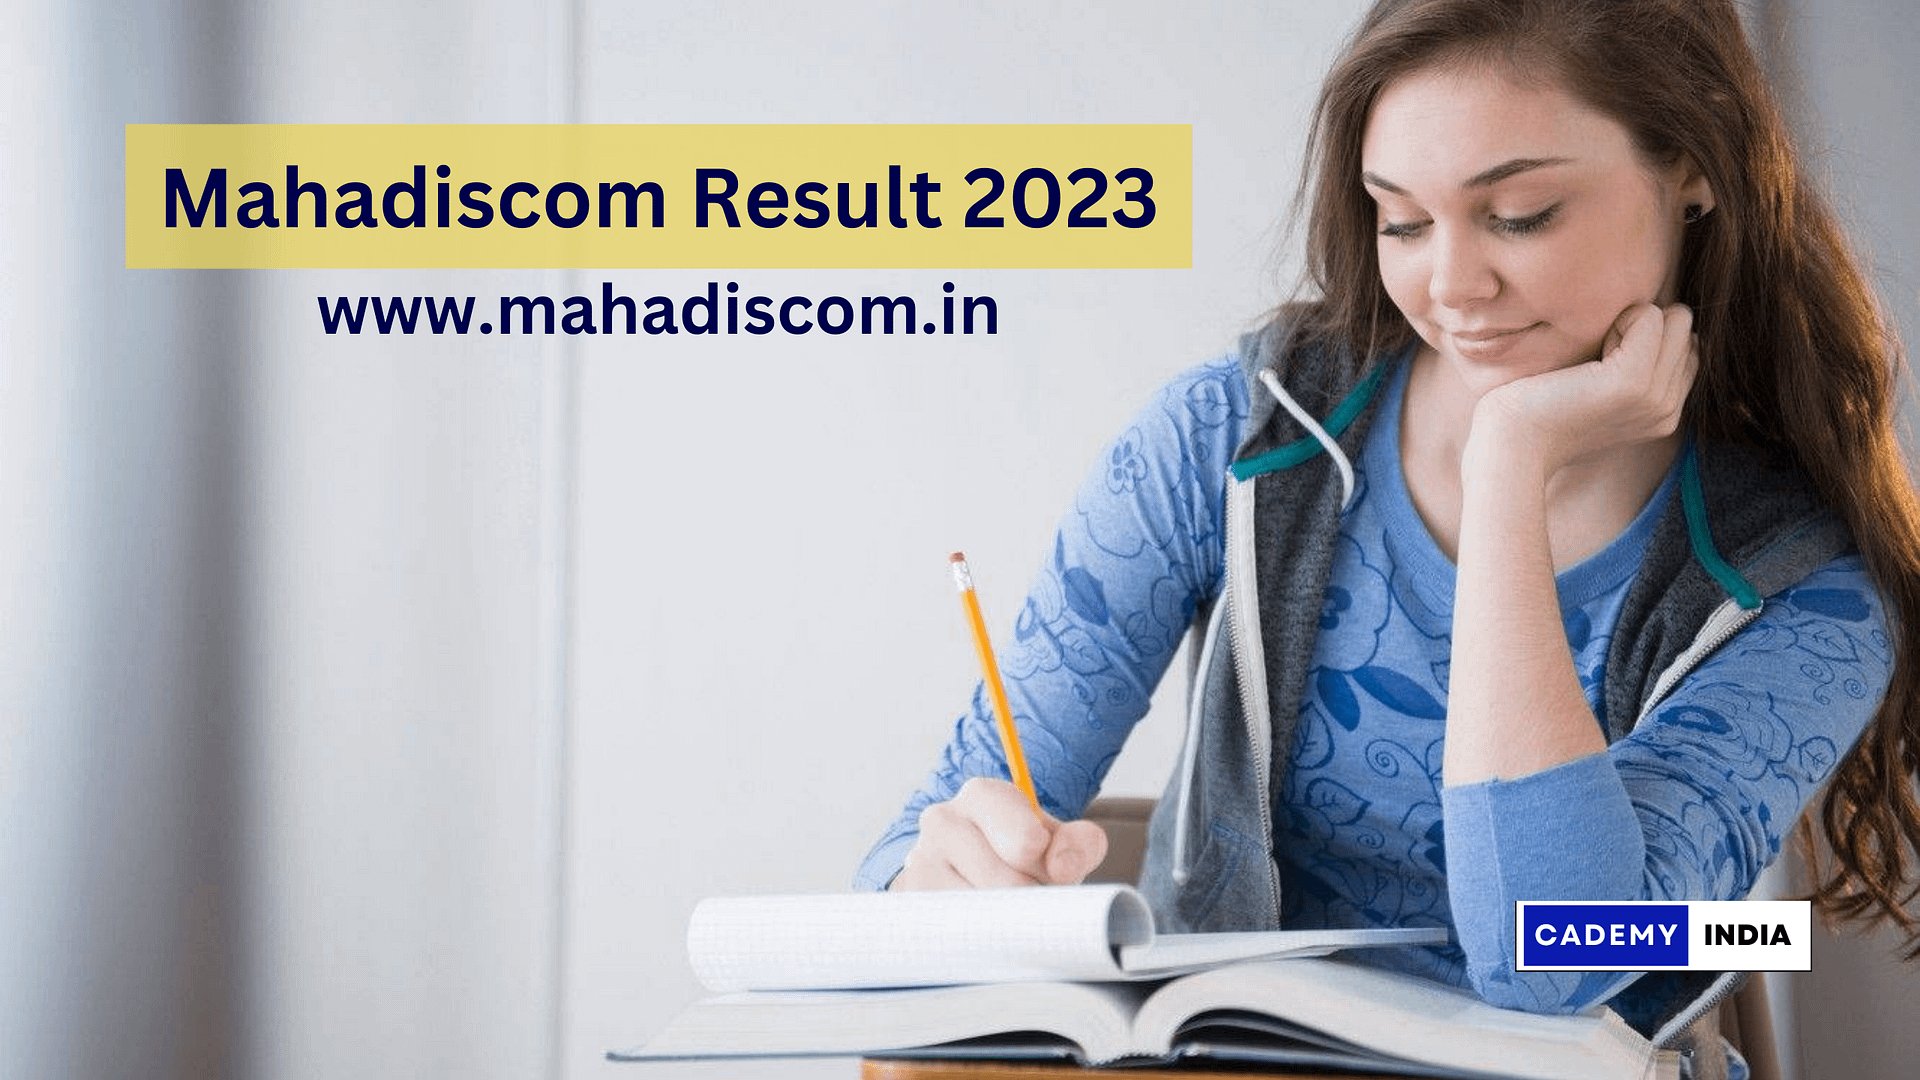 MAHADISCOM Result 2023: DET & GET Cut Off Marks | Graduate Engineer Trainee Merit List